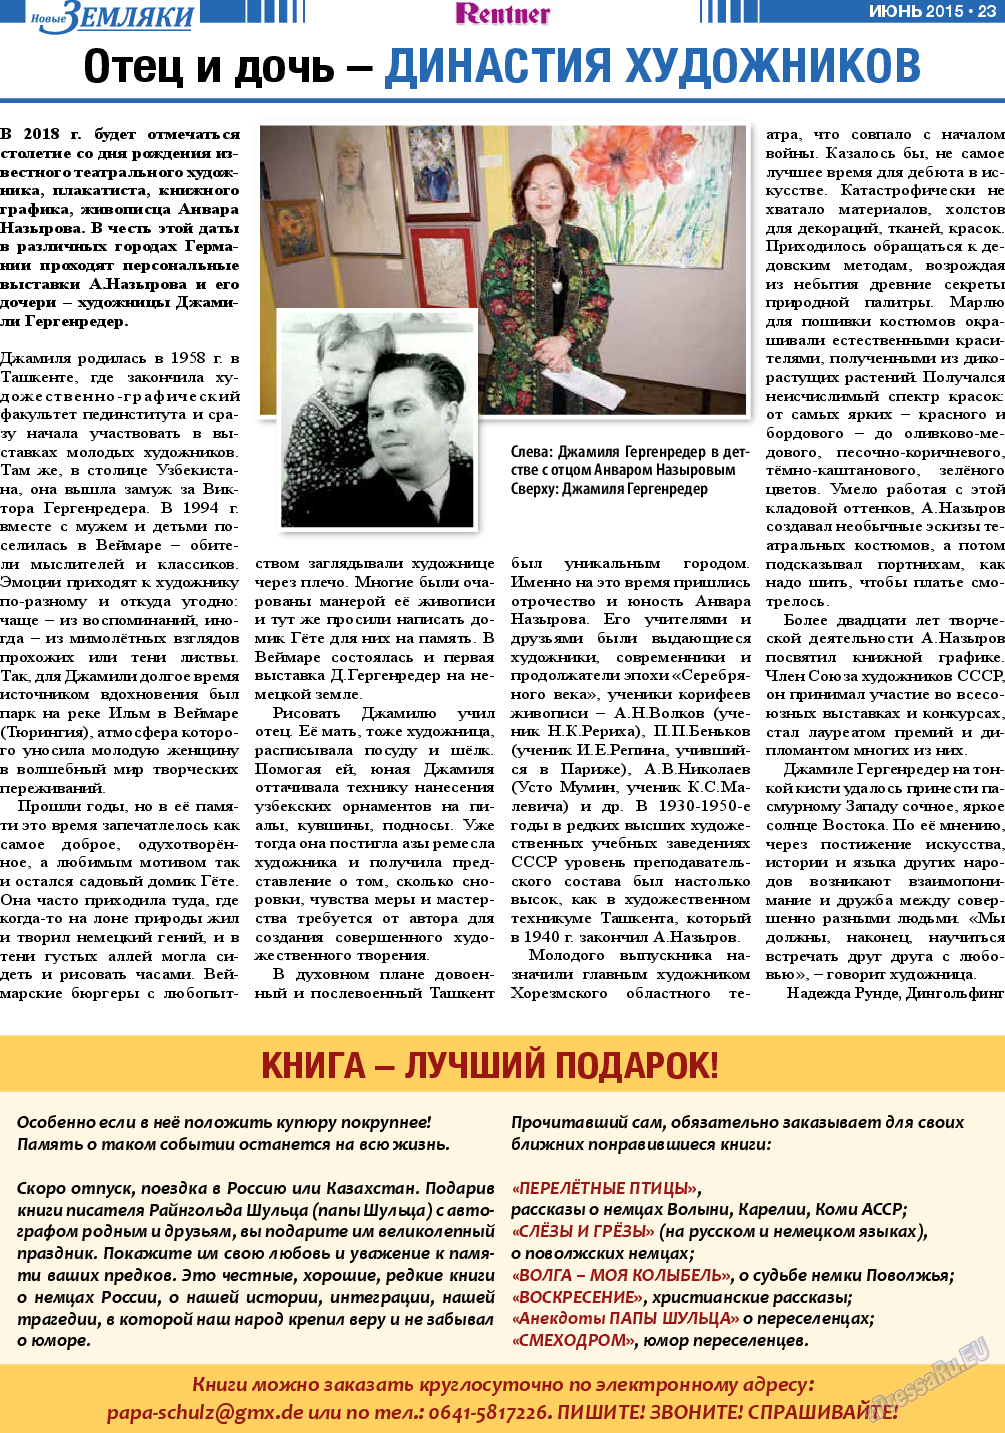 Новые Земляки, газета. 2015 №6 стр.23